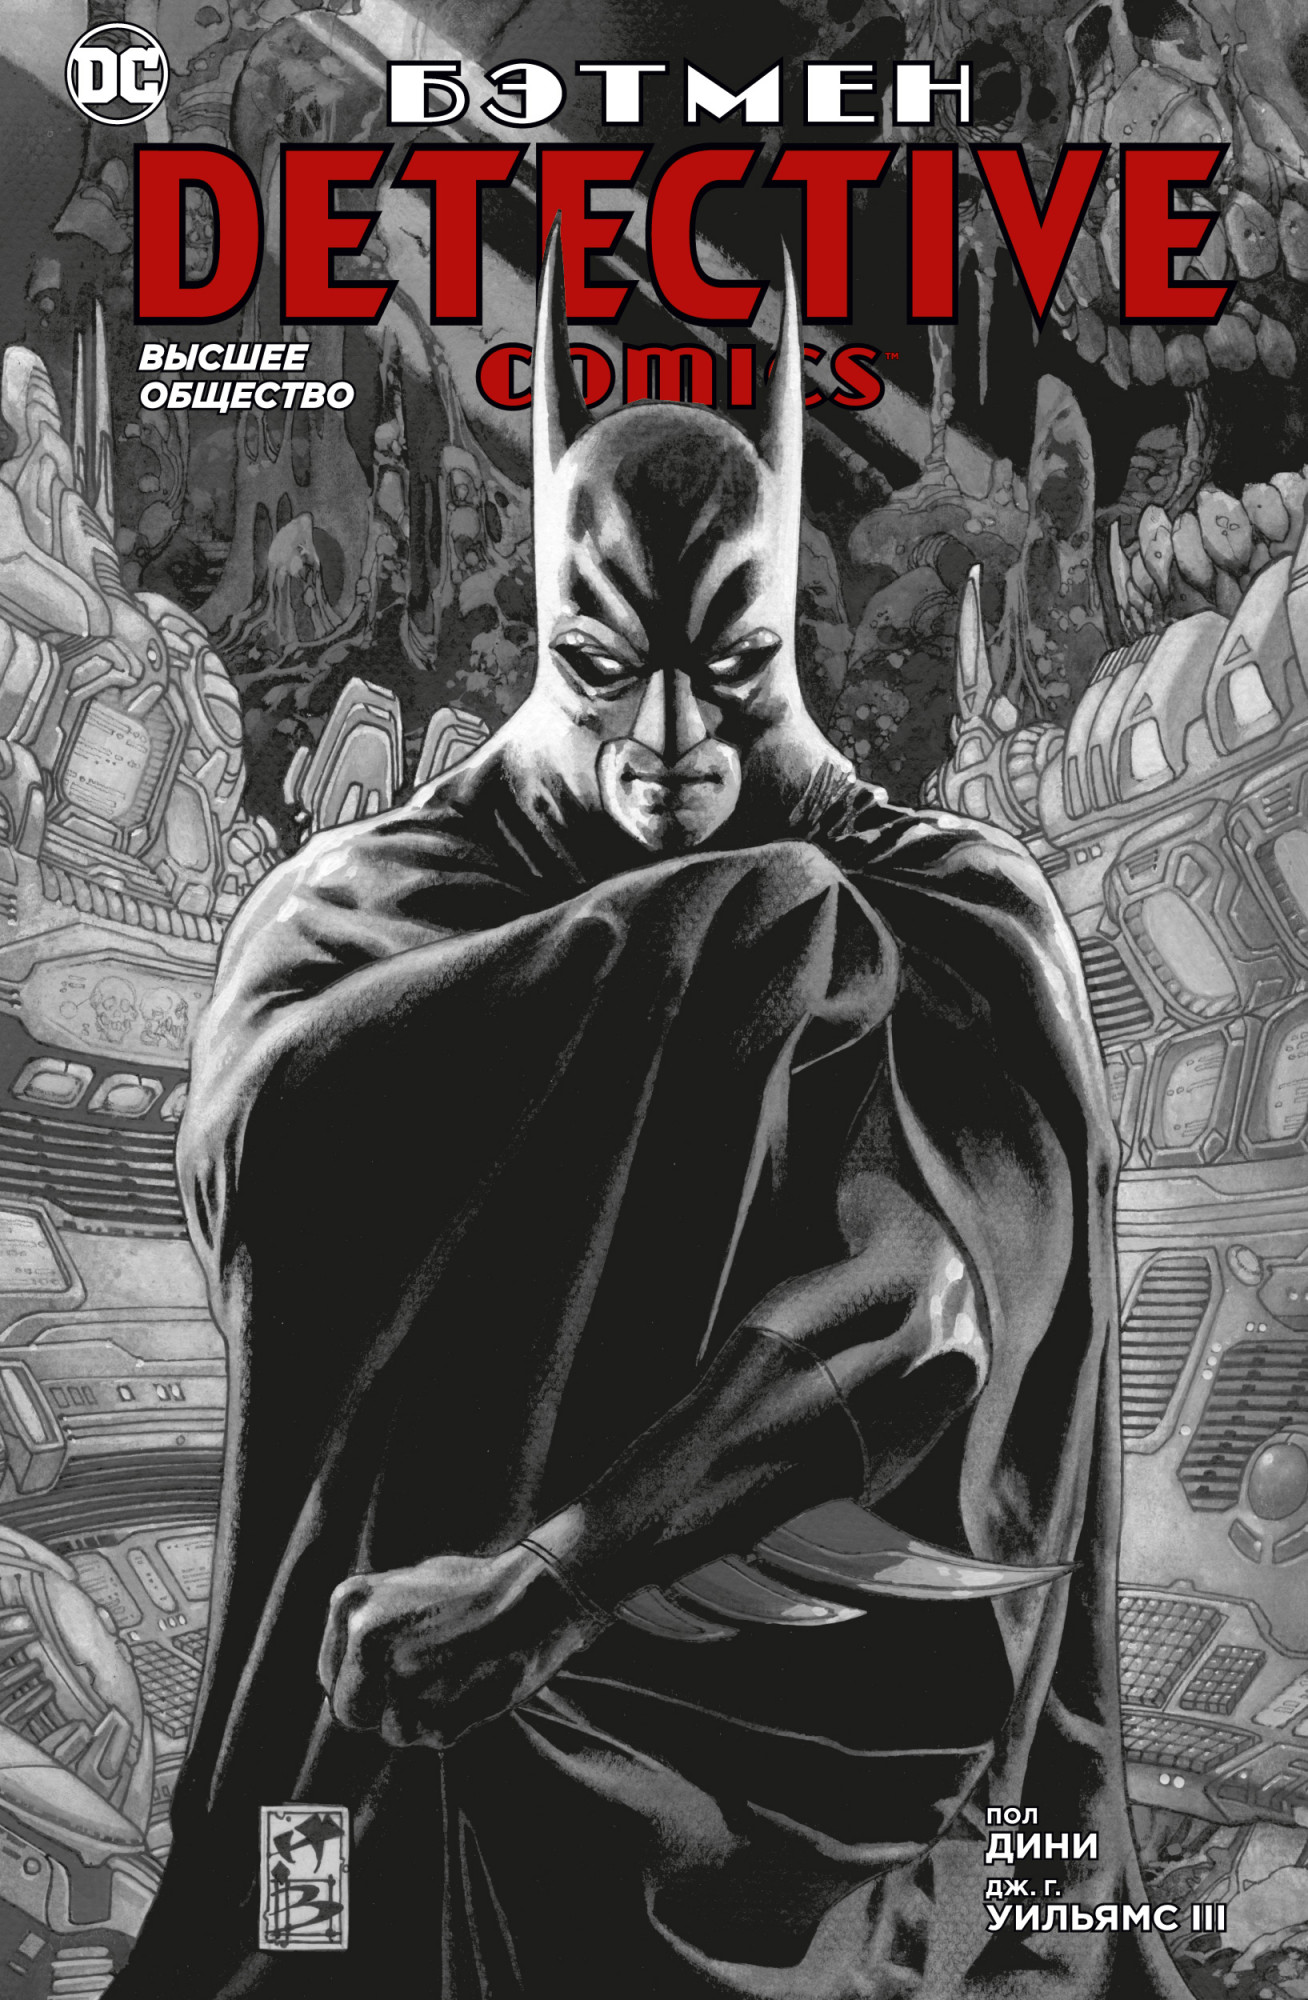 Комикс Бэтмен: Detective Comics – Высшее общество от 1С Интерес